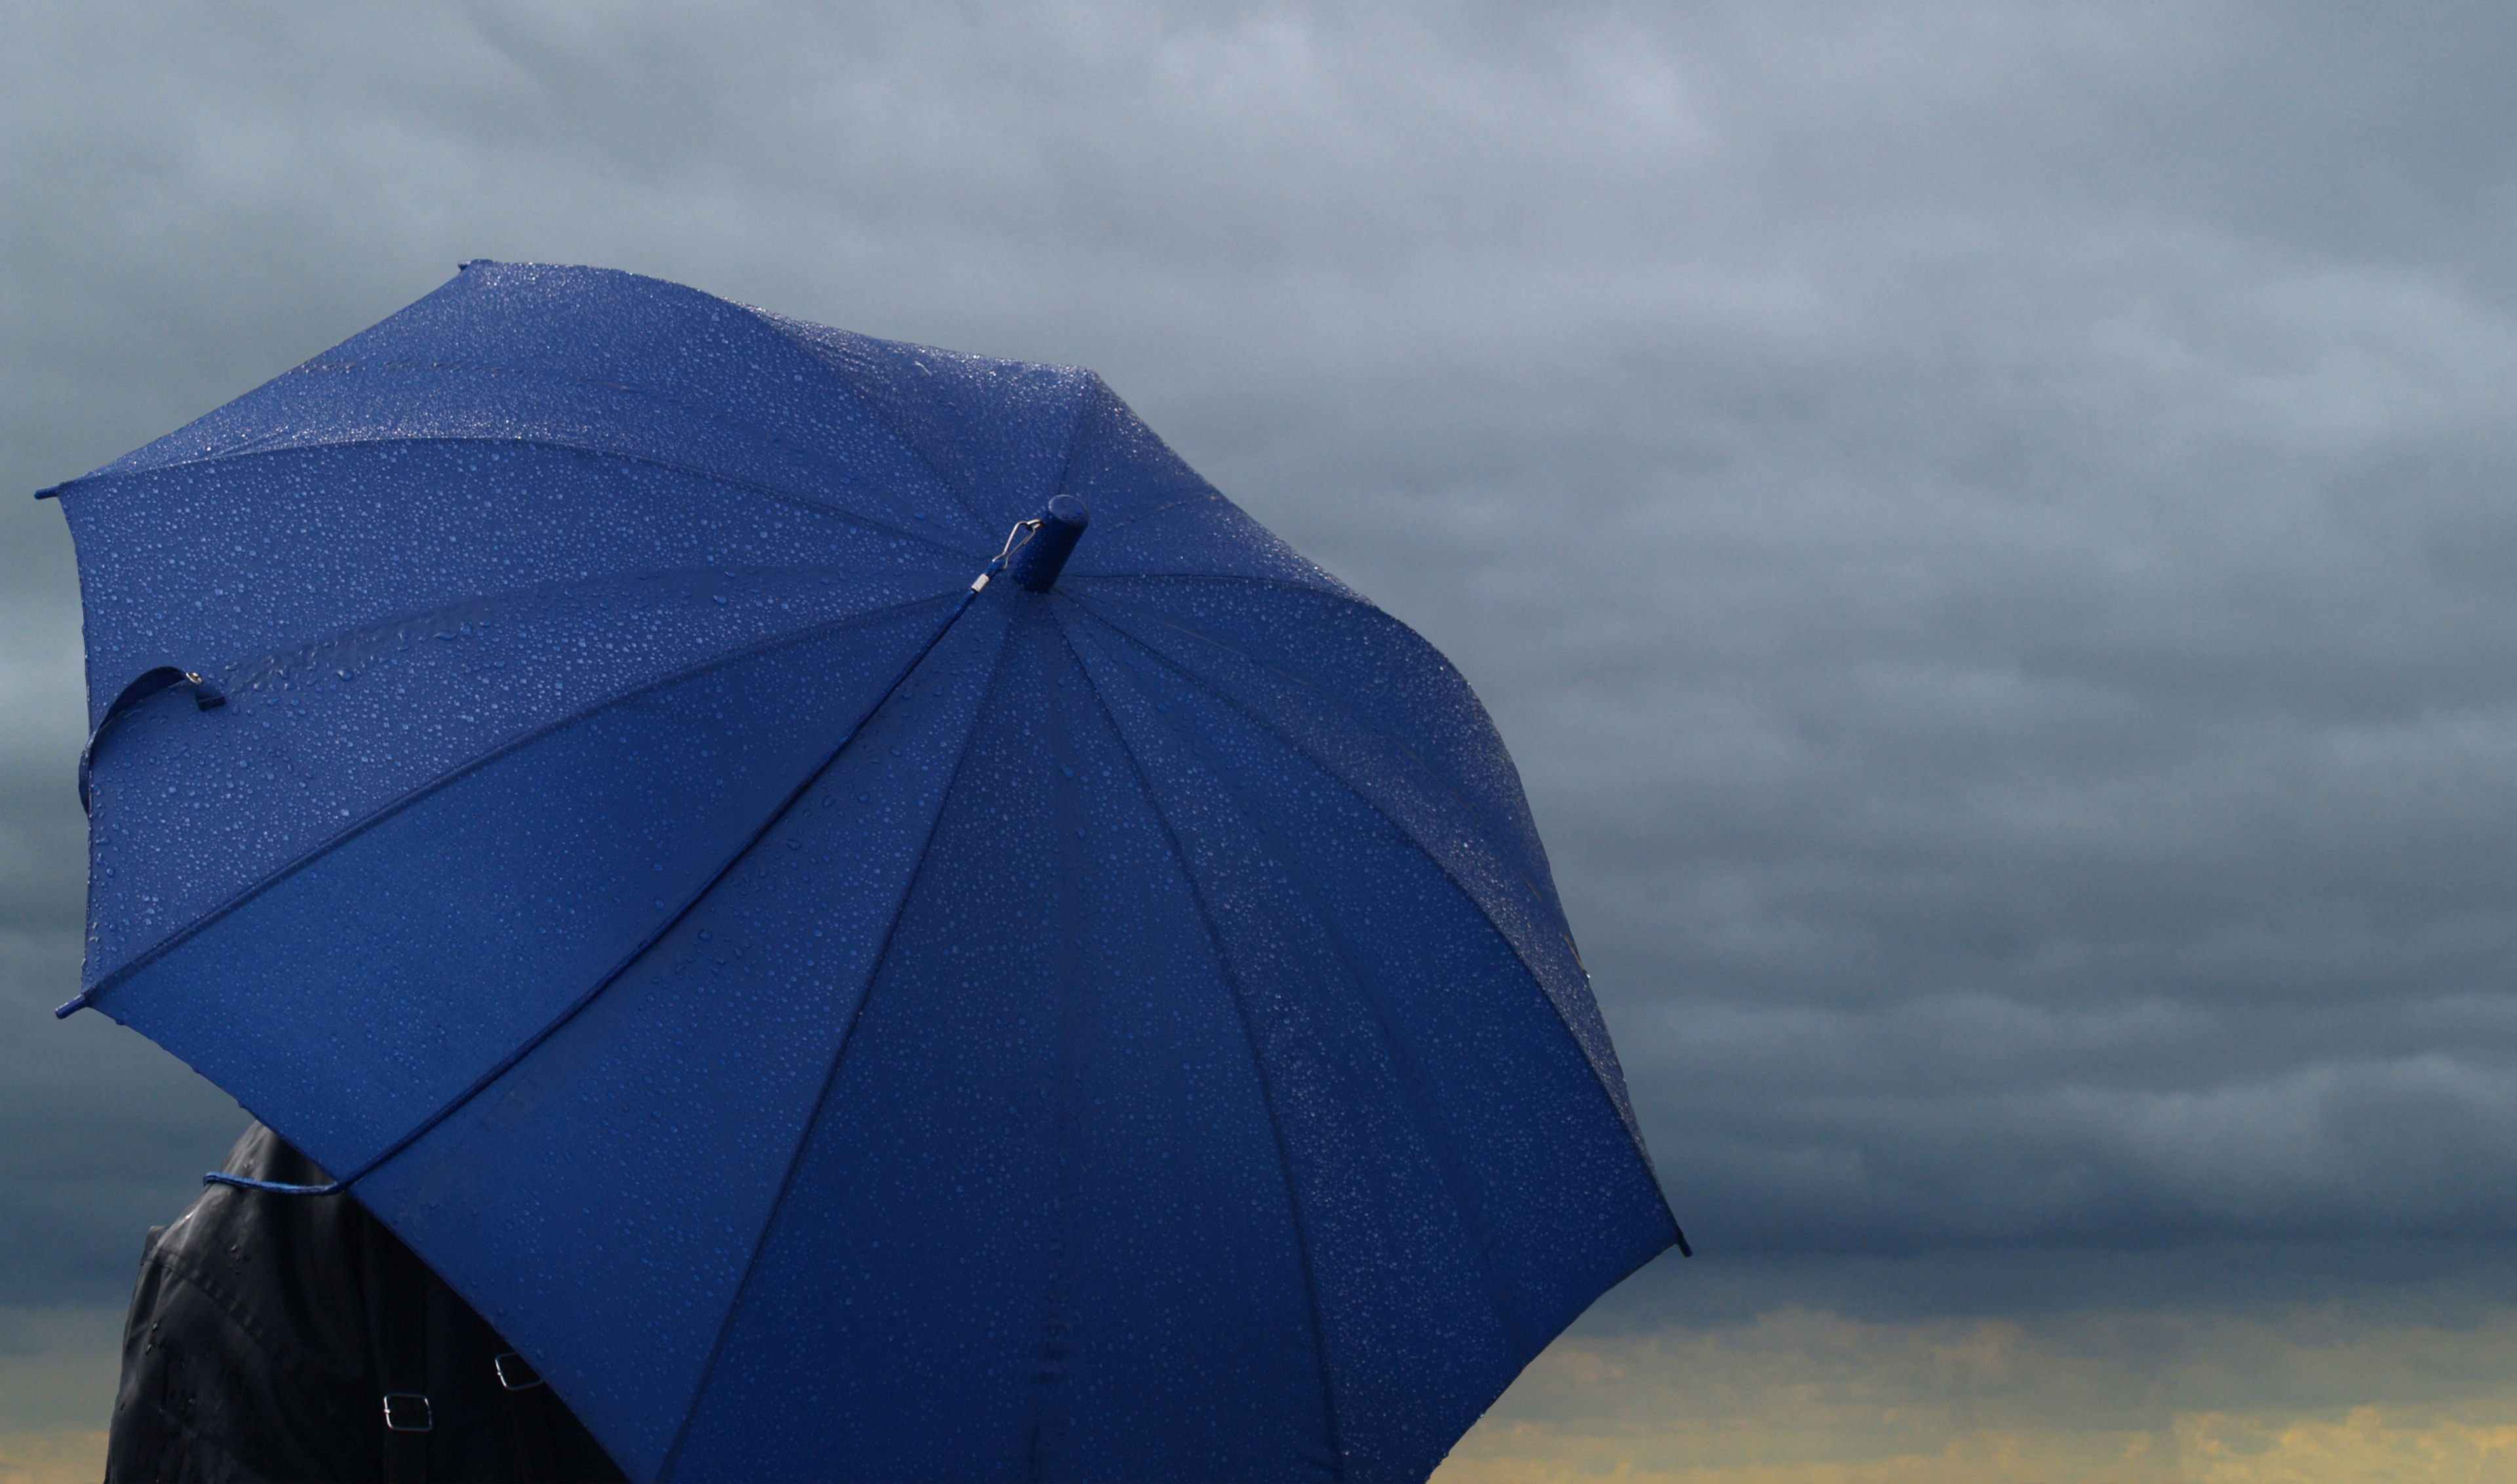 Paraguas azul